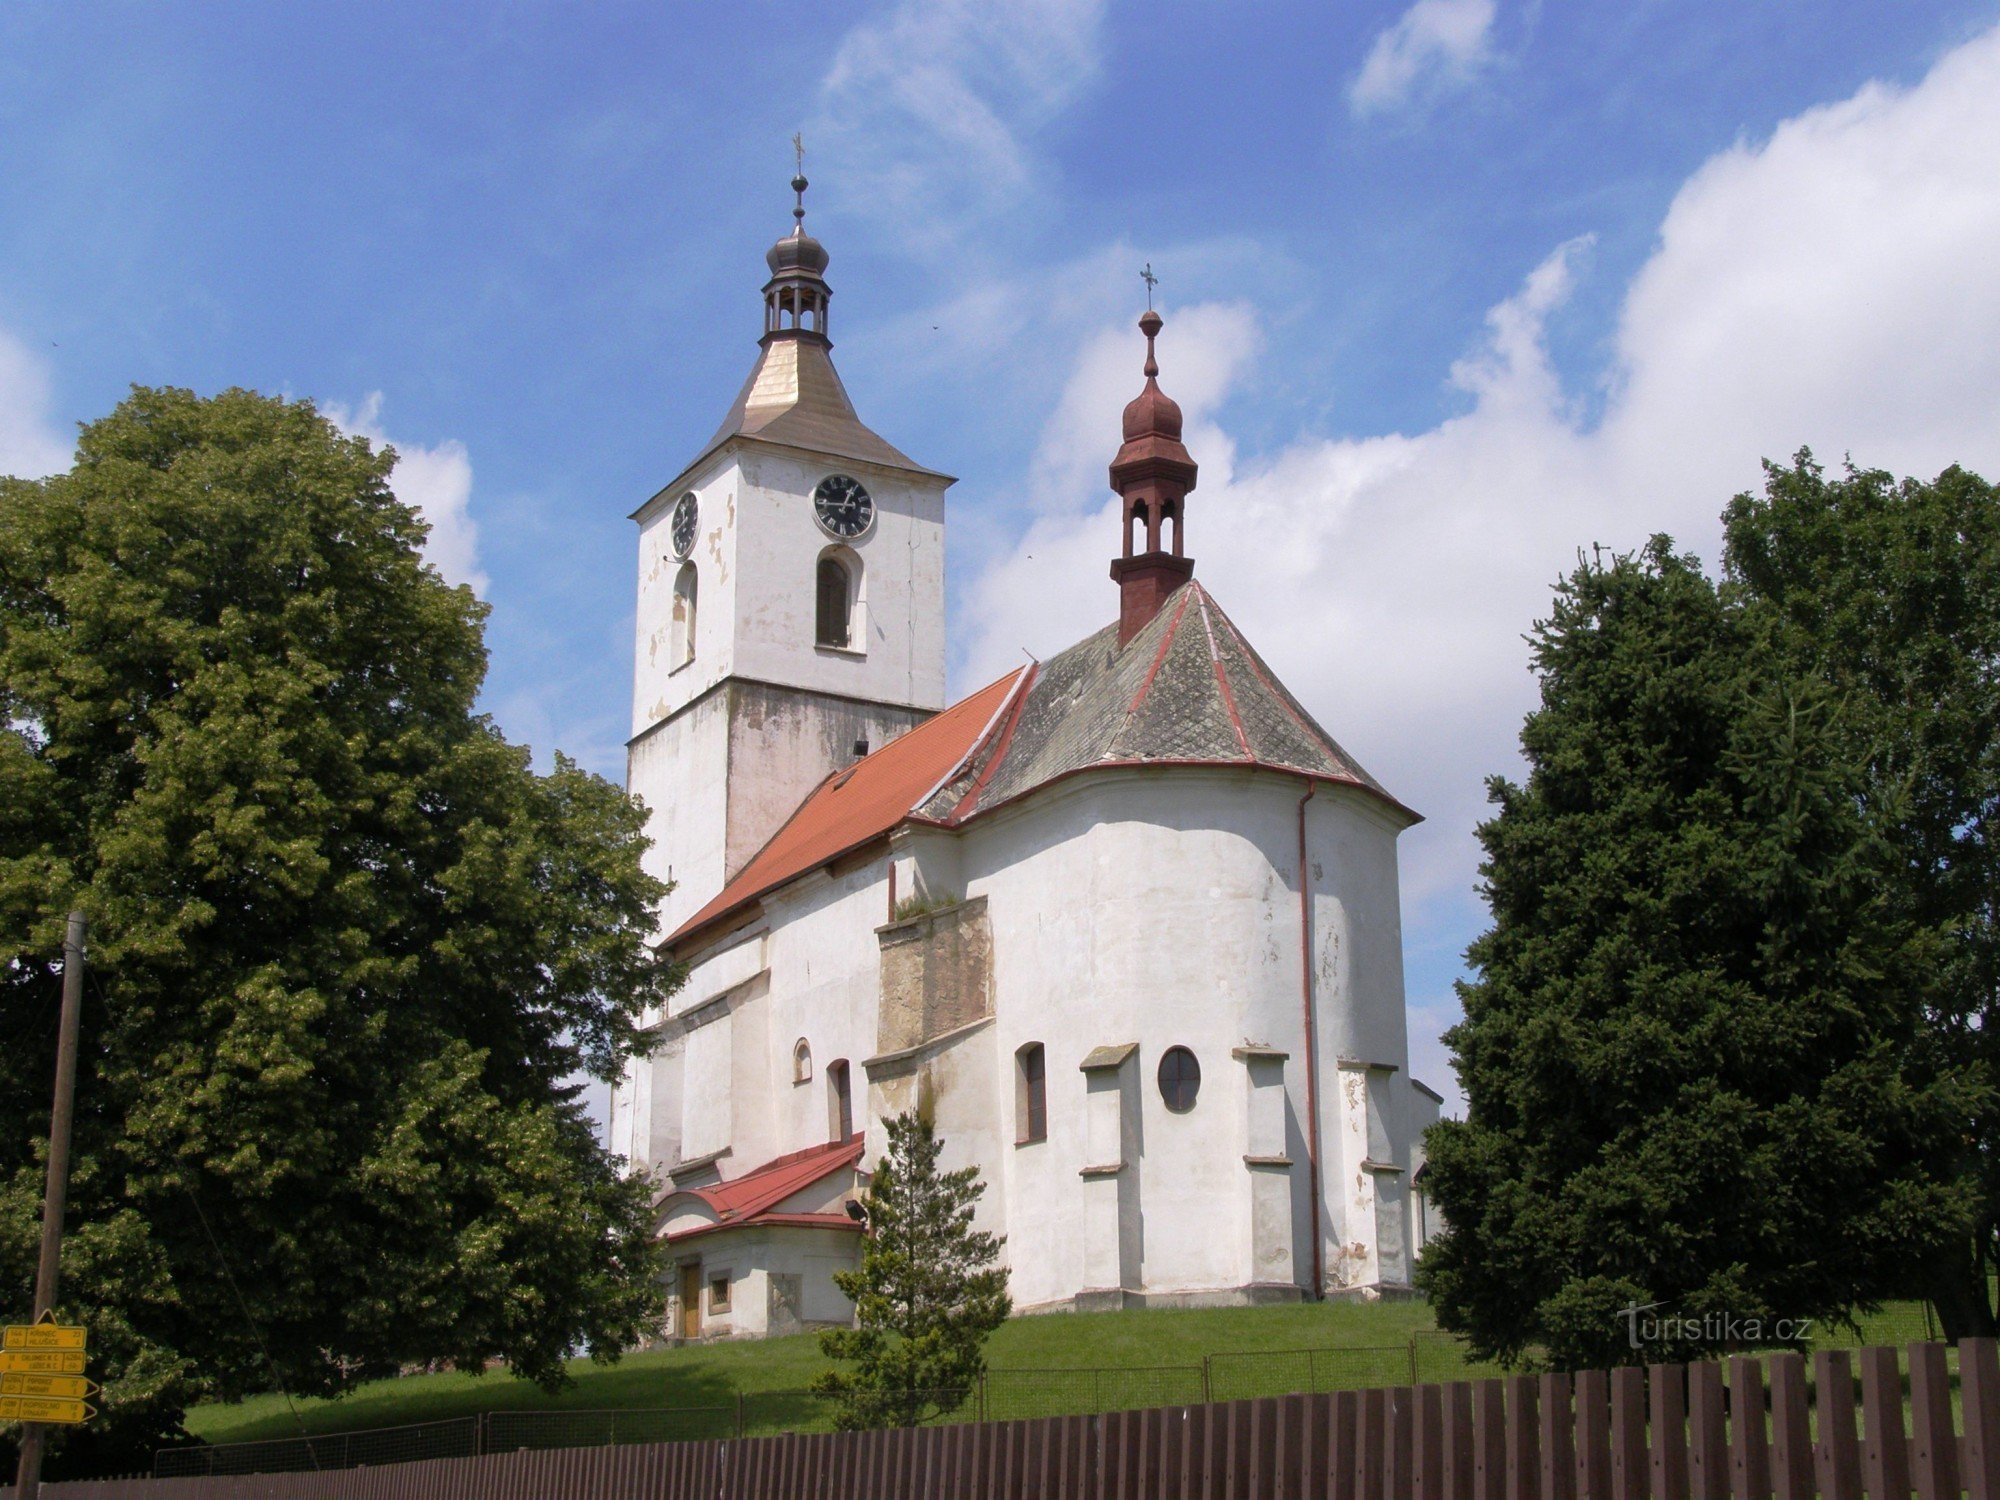 Starý Bydžov - crkva sv. Prokopije